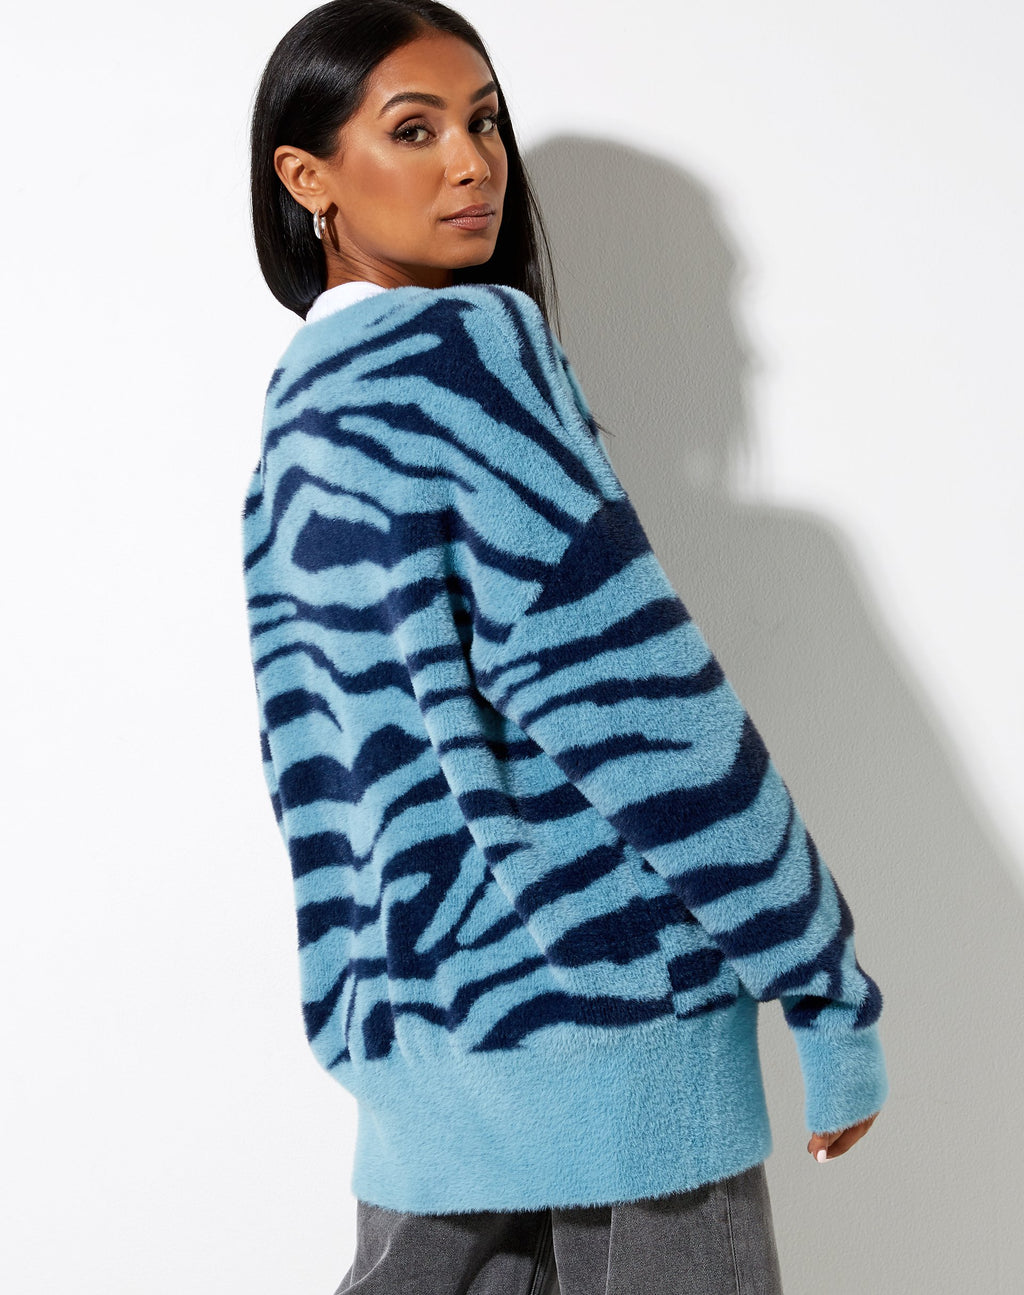 Uriela Cardi in Knit Zebra Blue and Navy